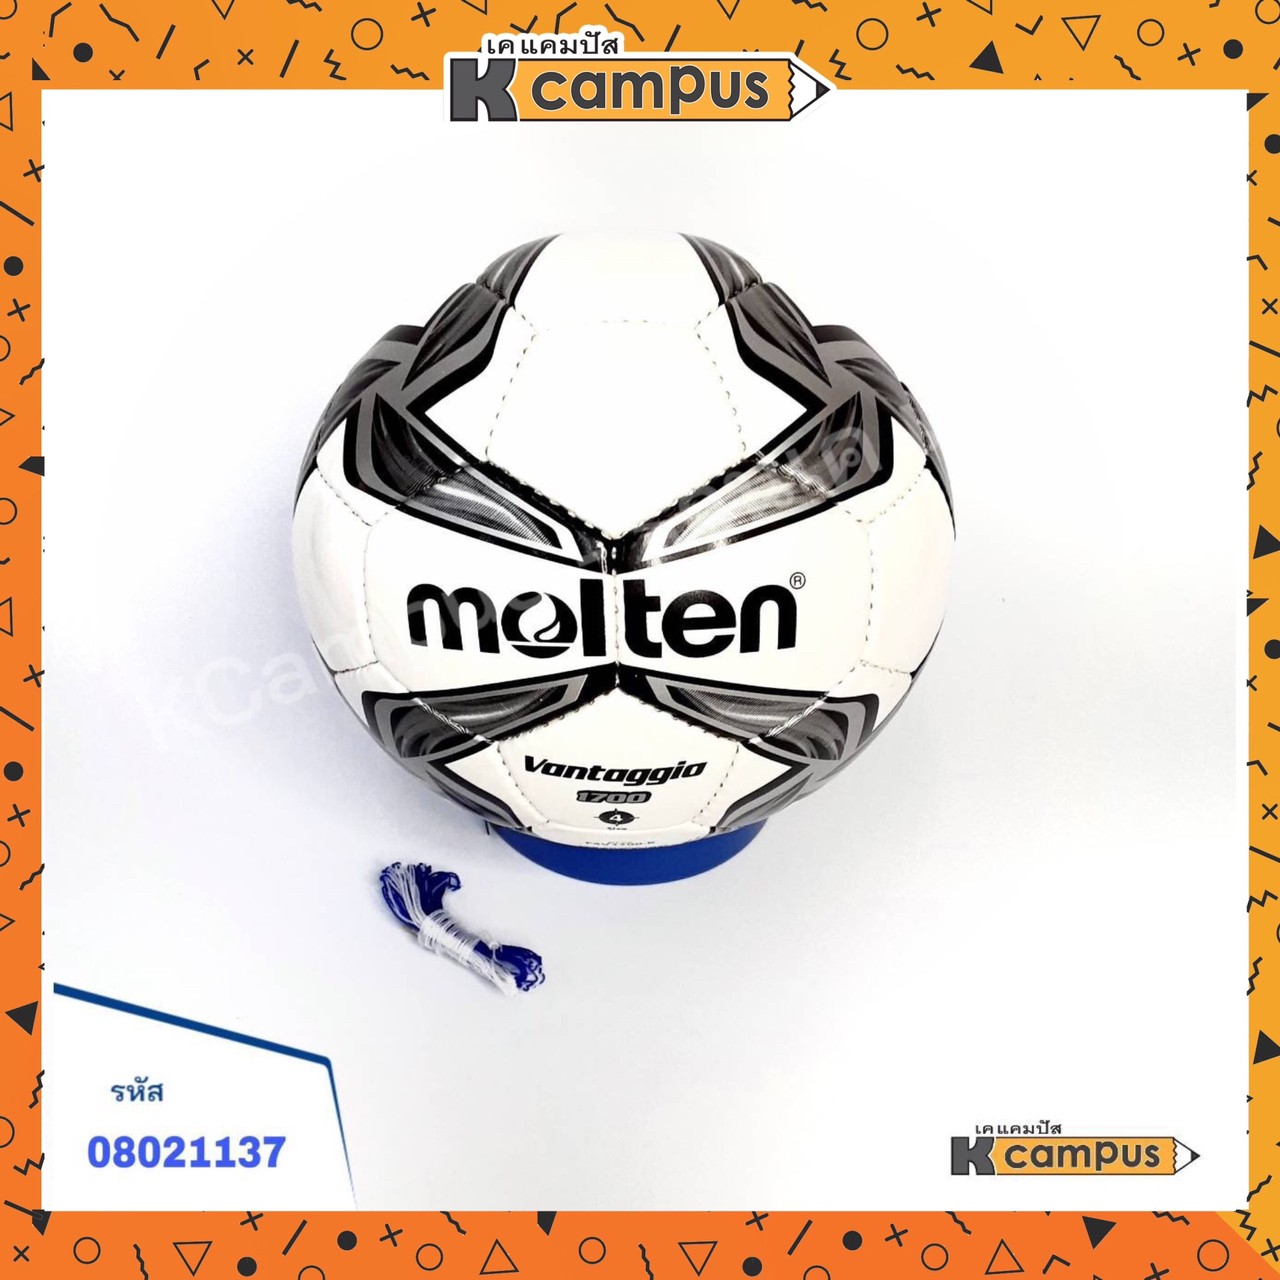 ลูกฟุตบอล FOOTBALL ฟุตบอลหนัง MOLTEN F4V1700 ขาวสลับดำ เบอร์4 แถมฟรี ตาข่ายใส่ลูกฟุตบอล + เข็มสูบลม